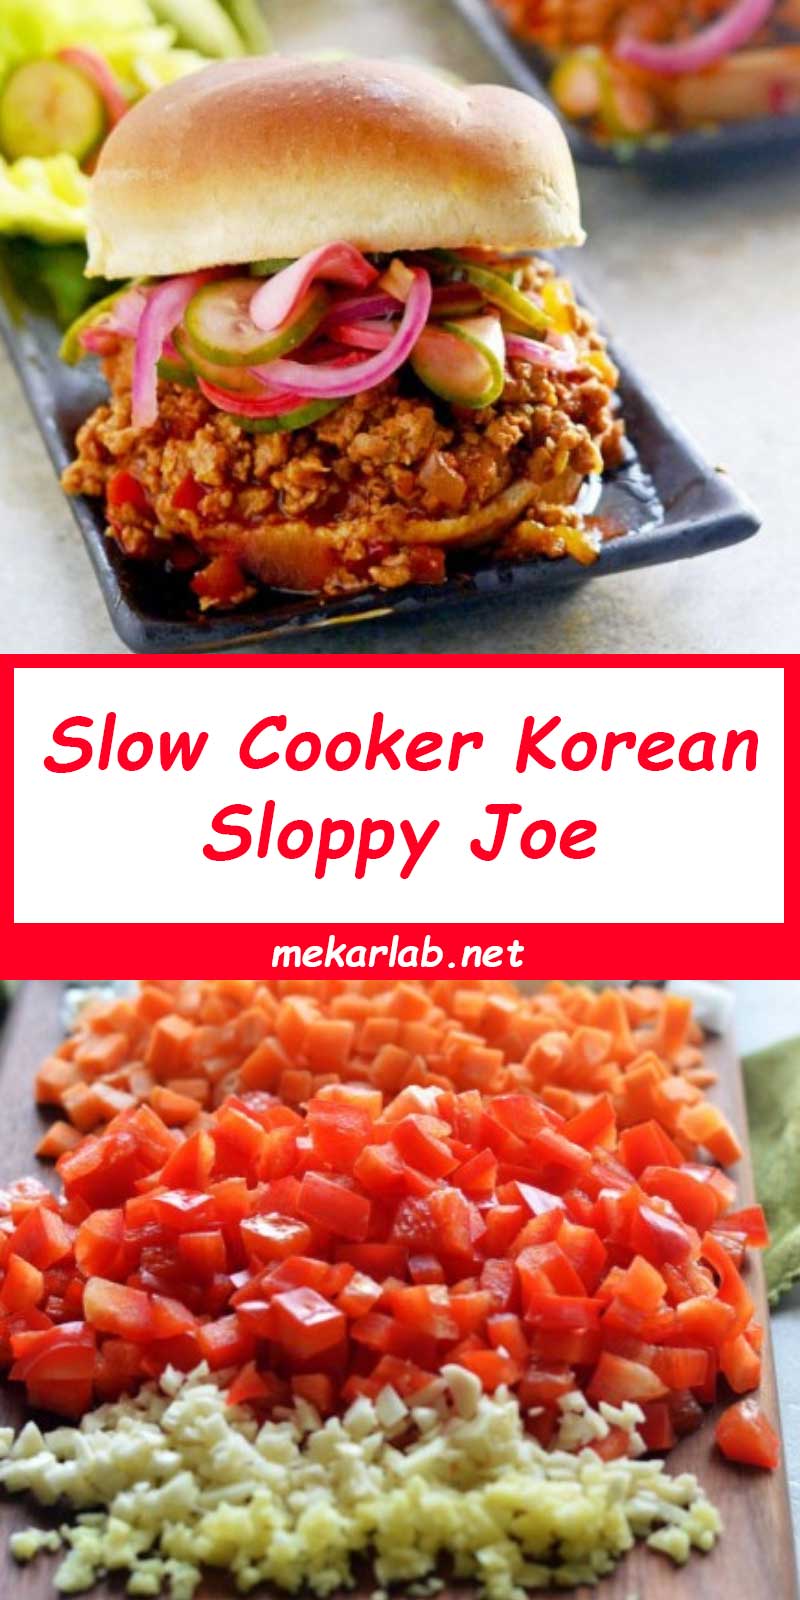 Slow Cooker Korean Sloppy Joe